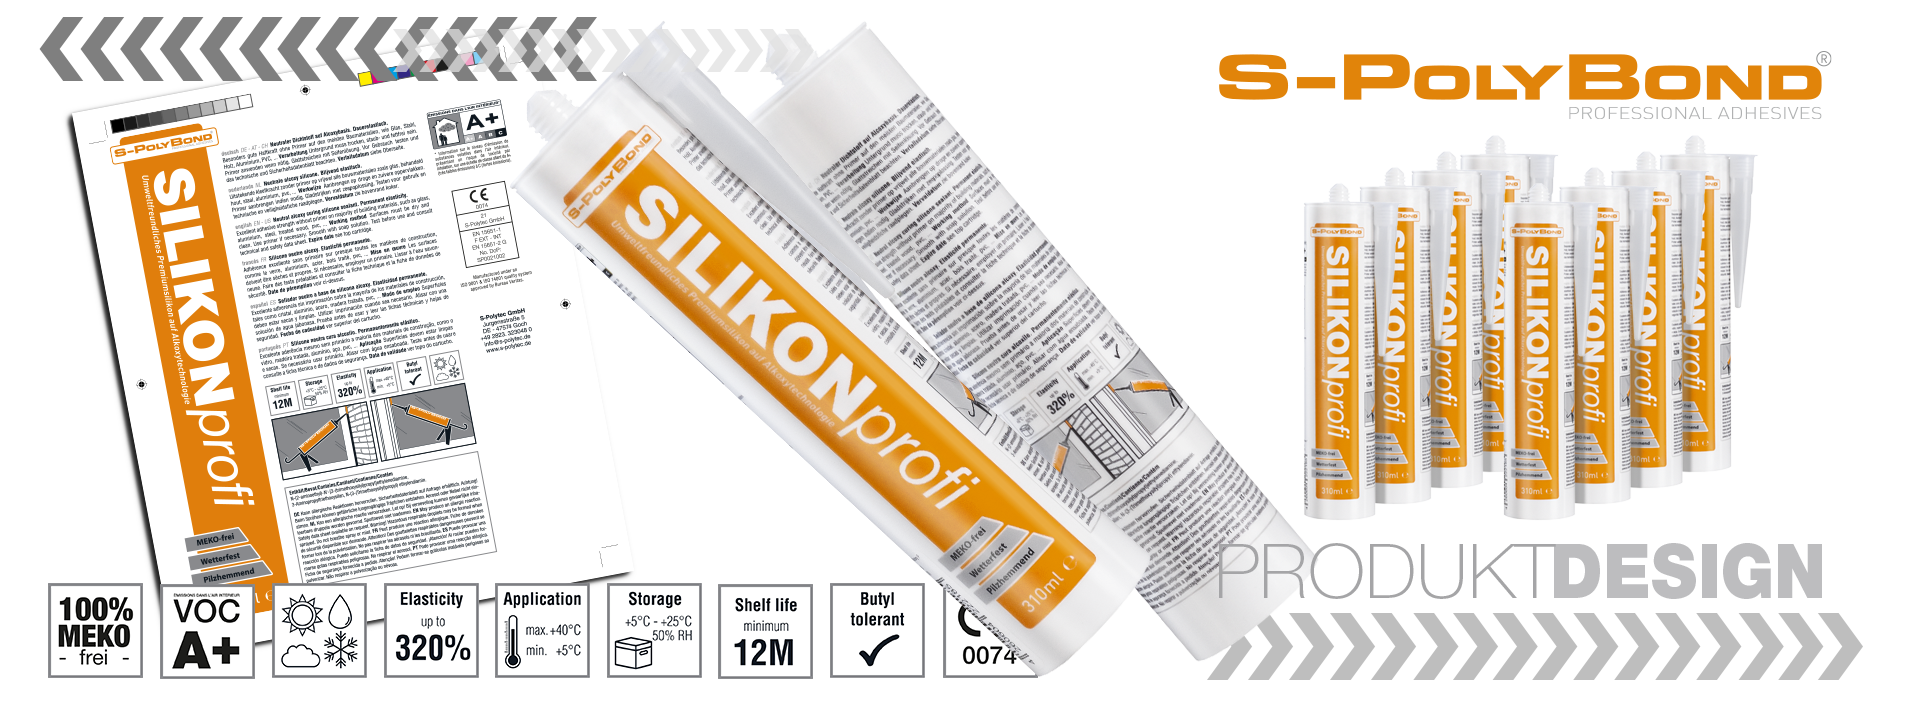 Kartuschendesign für Silikone von S-Polybond Silikonprofi